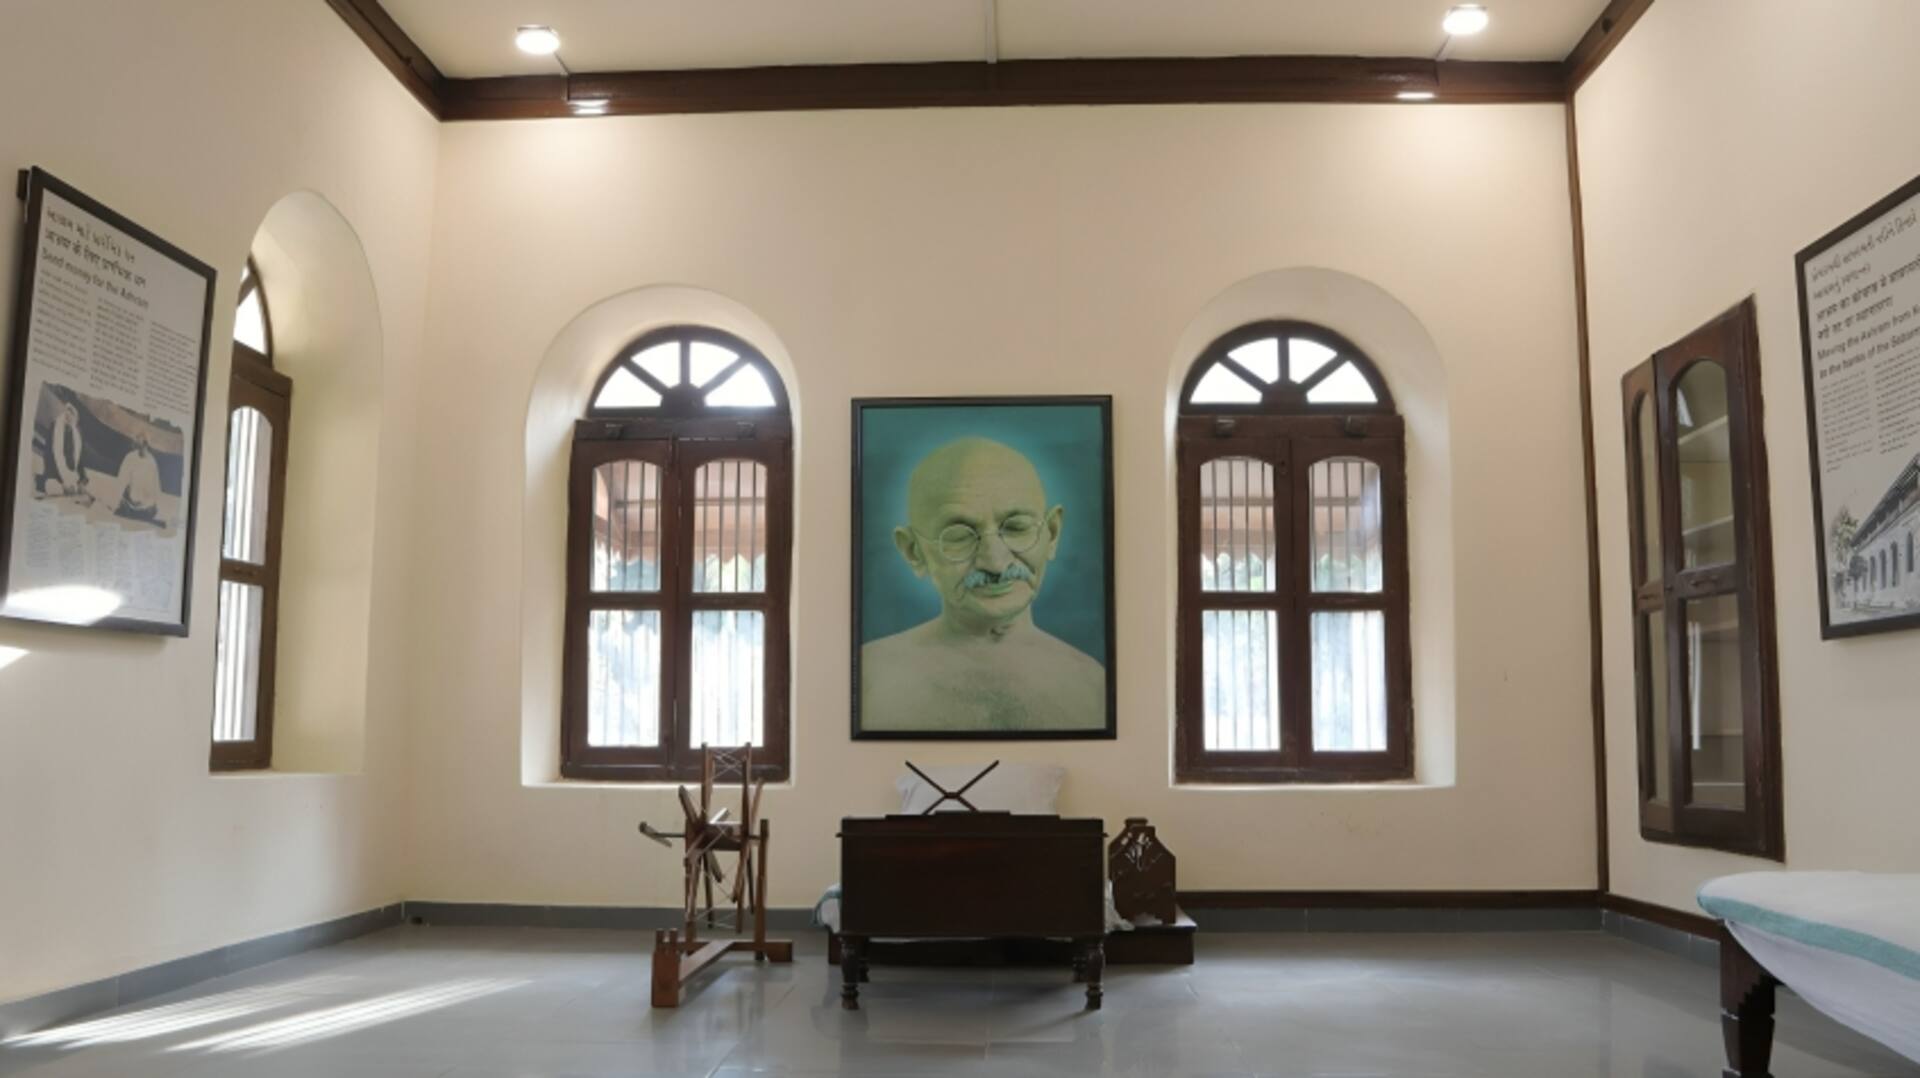 महात्मा गांधी के साबरमती आश्रम का बदलेगा रंग-रूप, प्रधानमंत्री मोदी ने जारी किया मास्टर प्लान